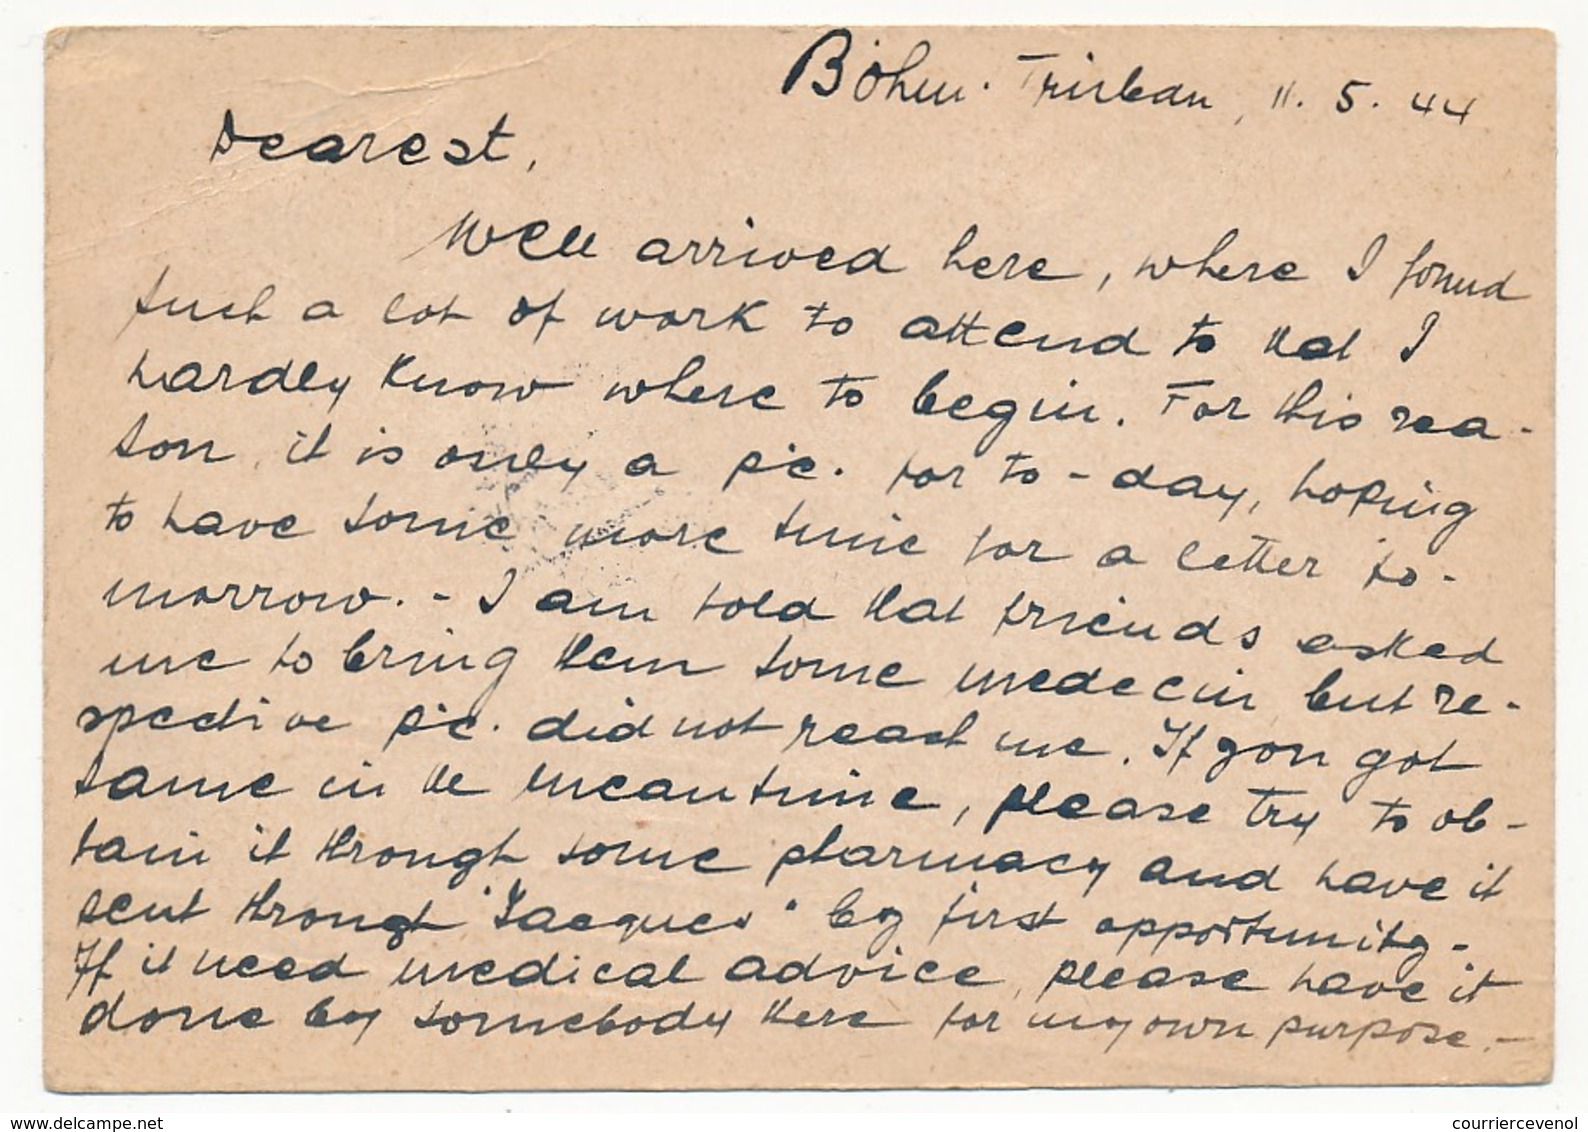 4 cartes (entiers postaux) depuis Böhmisch-Trübau, (1944) - Censures allemandes